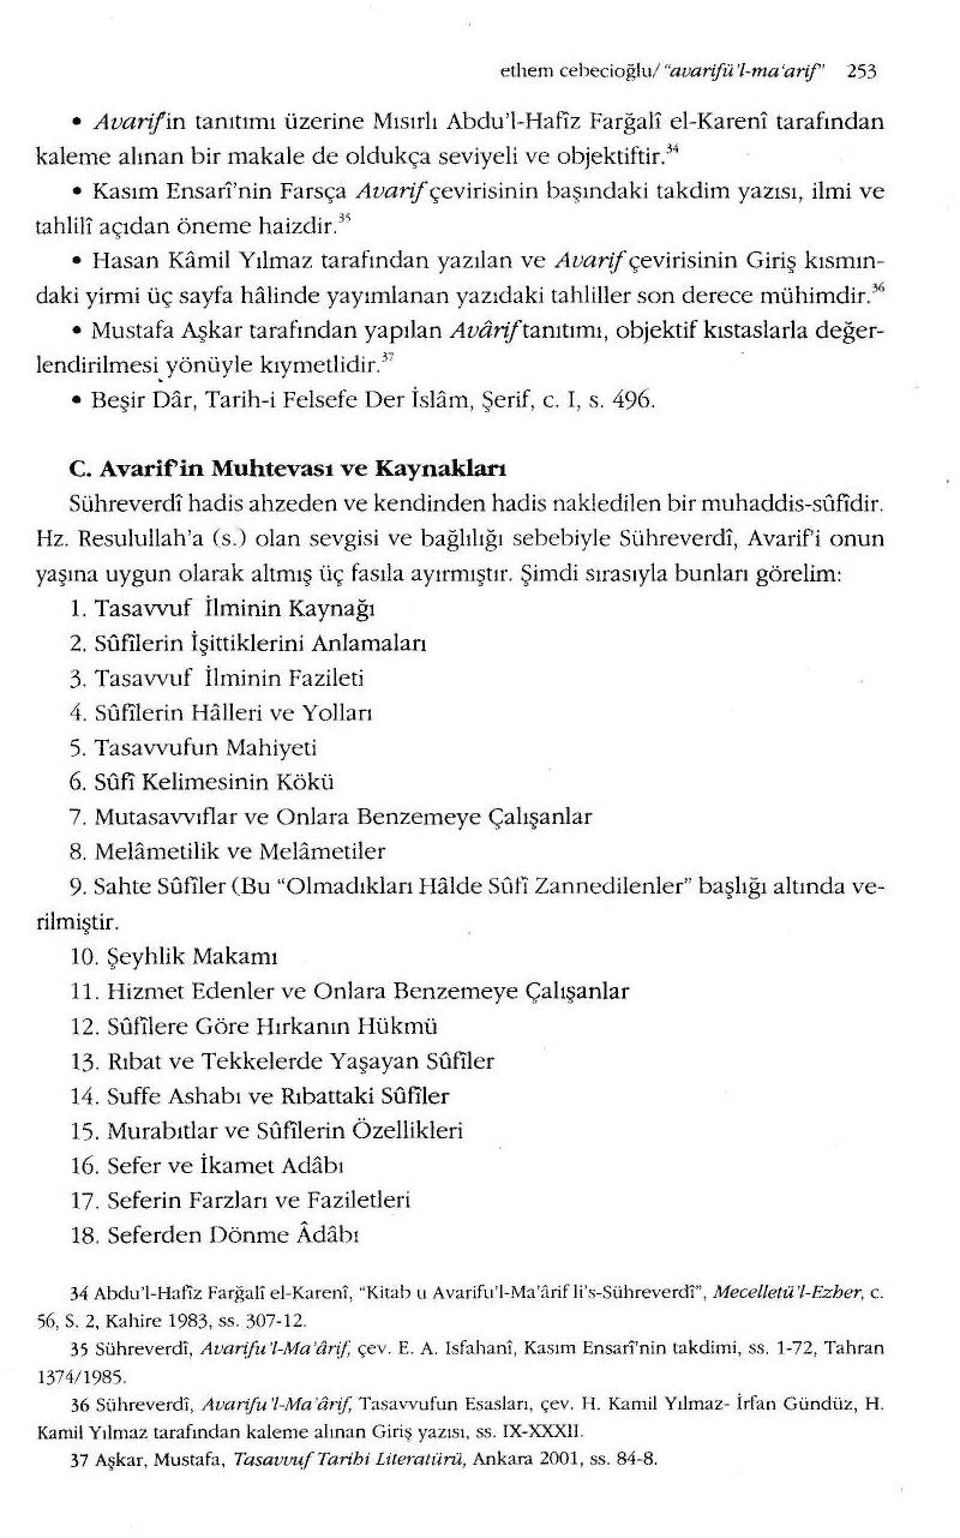 3 s Hasan Kamil Yılmaz tarafından yazıjan ve Avarif çevirisinin Giriş kısmın daki yirmi üç sayfa halinde yayımlanan yazıdaki tahlitler son derece mühimdir.